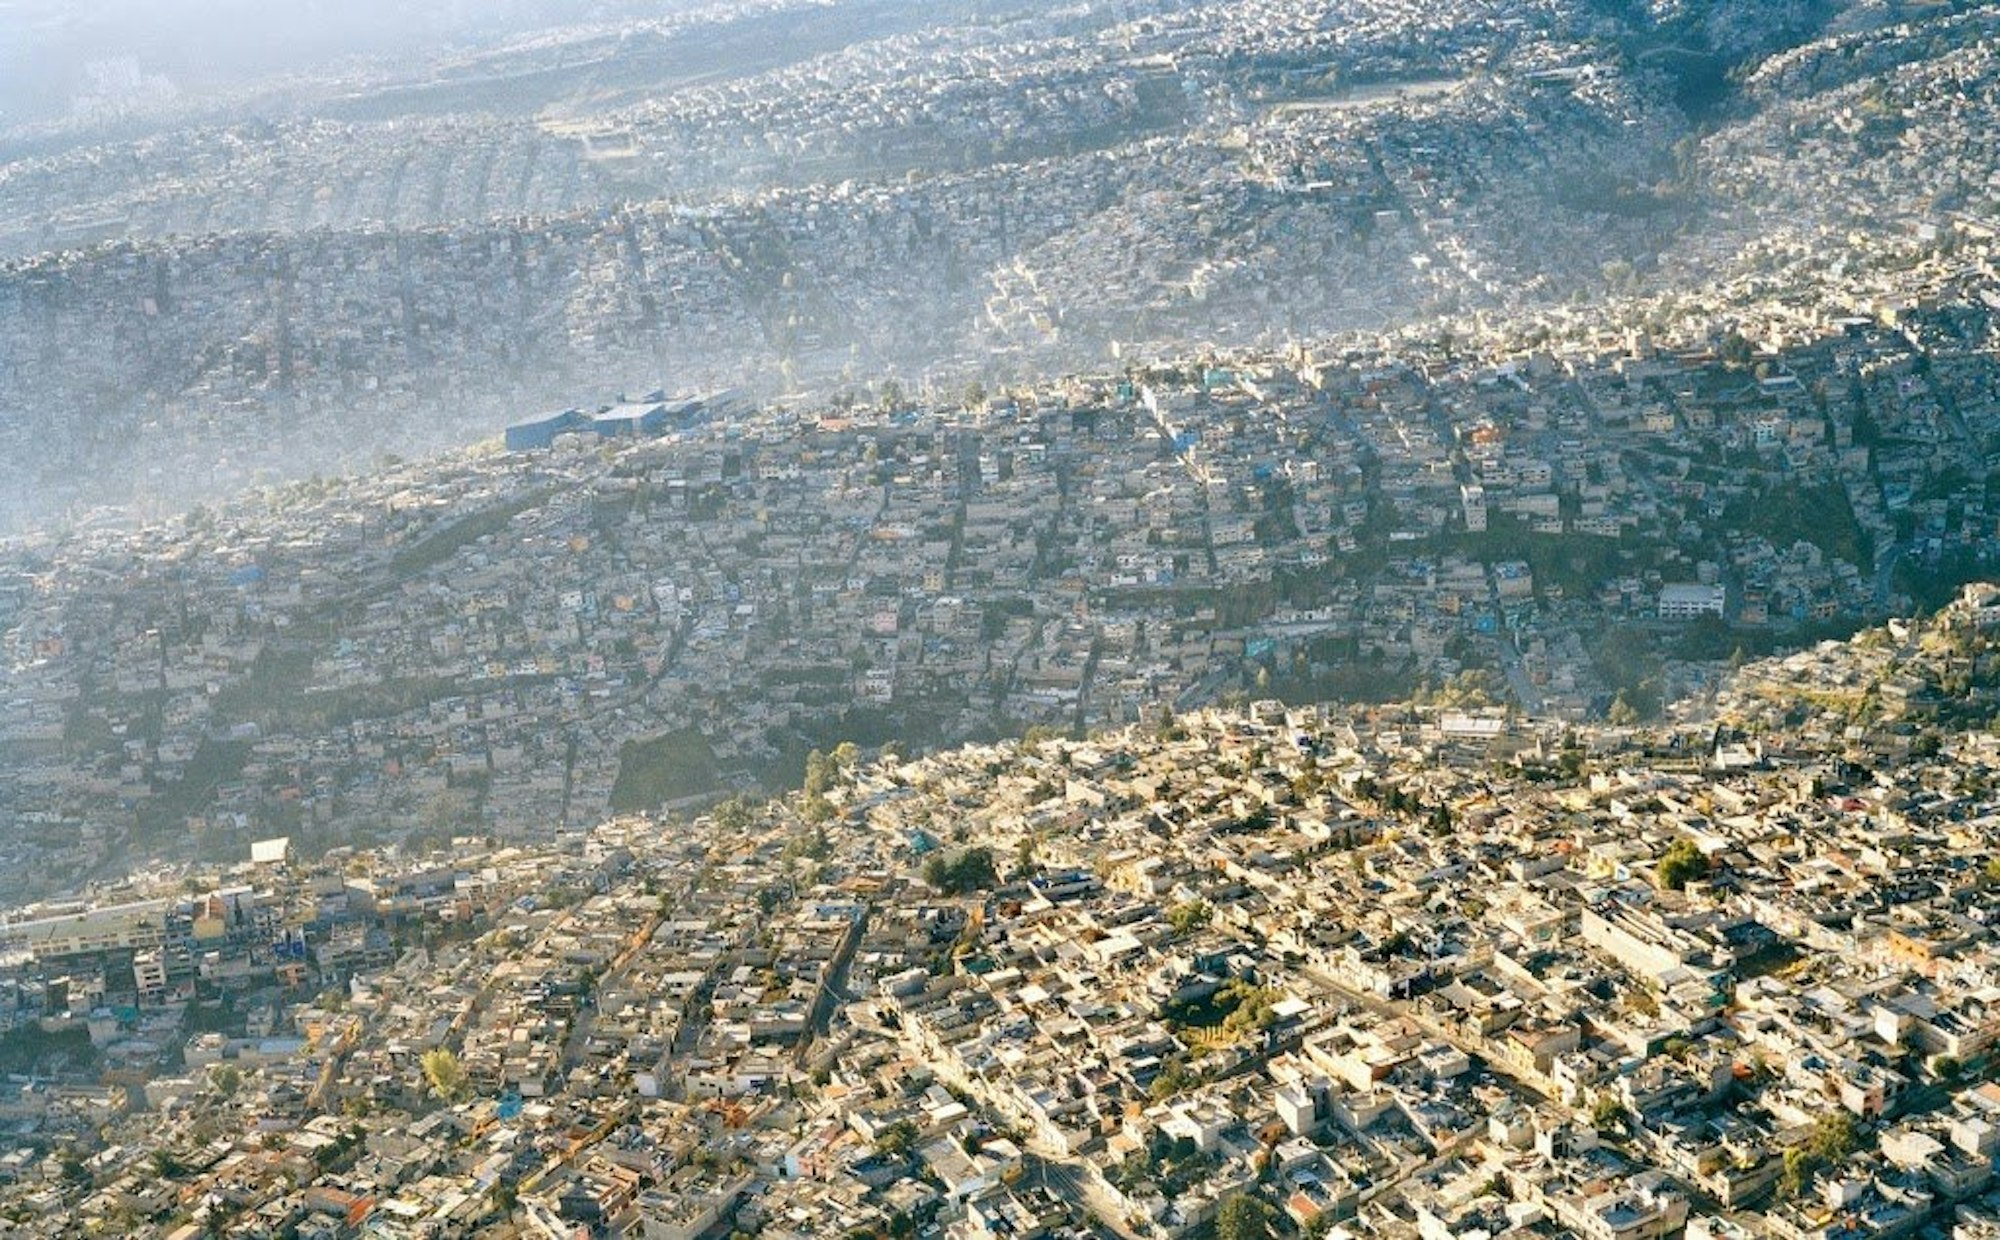 Die Häuser der 20 Millionen Einwohner großen Megacity Mexiko City breiten sich wie ein endloser Teppich in der Landschaft aus.